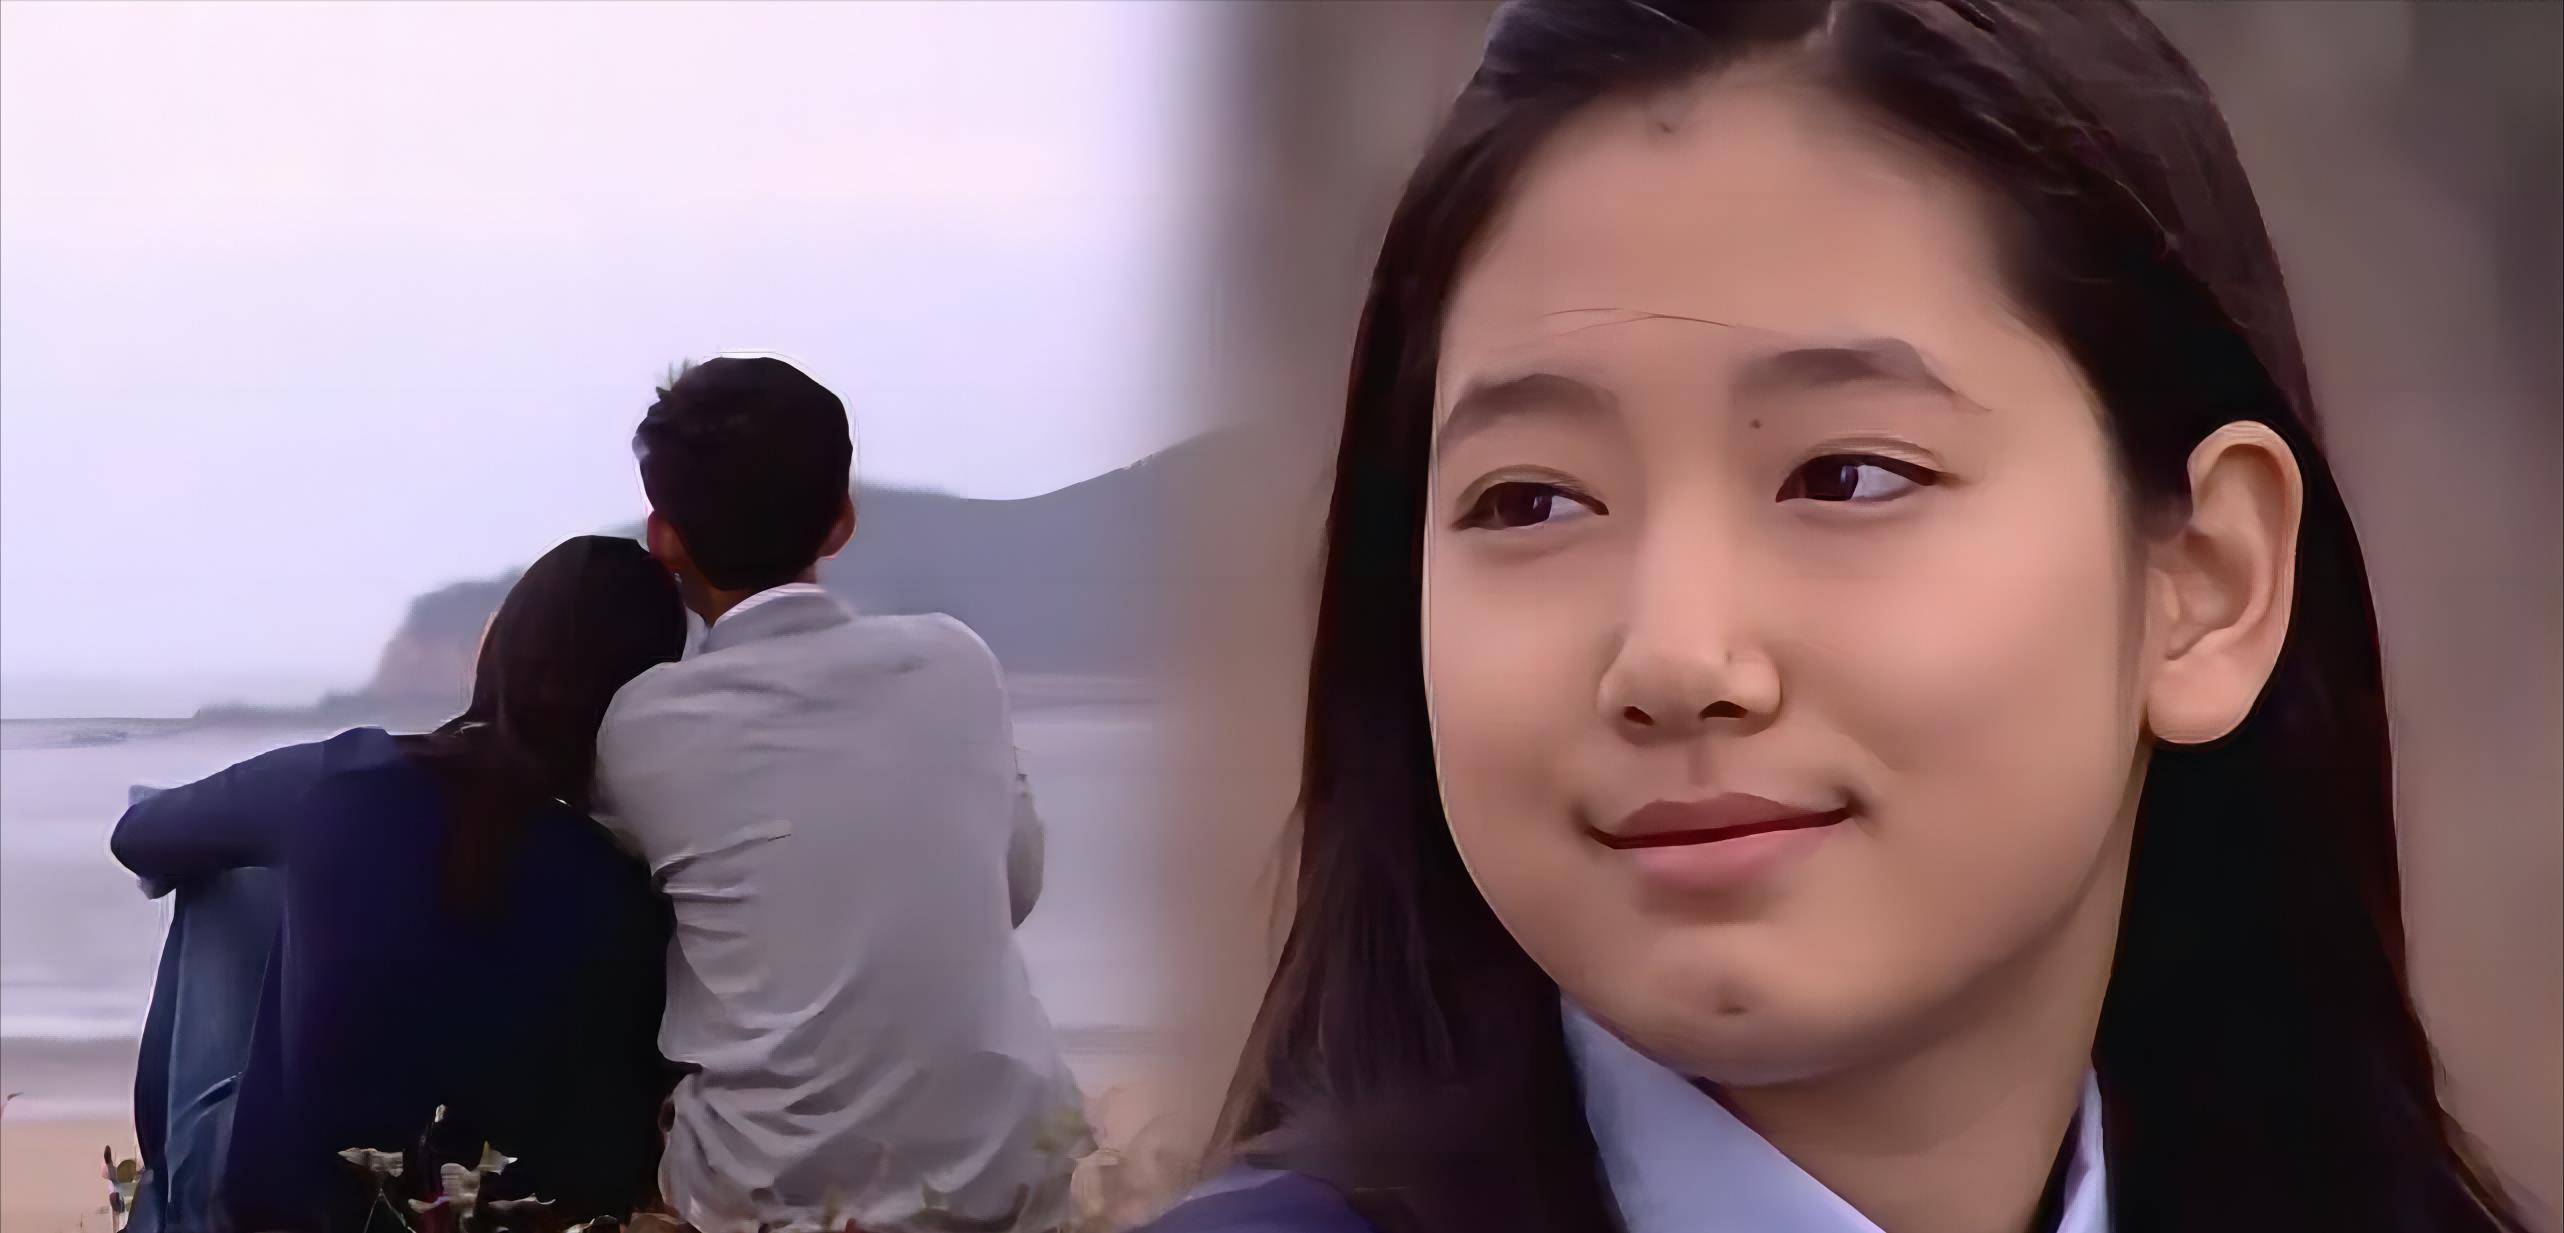 13岁的朴信惠出演了催泪大剧《天国的阶梯》,在剧中饰演崔智友童年